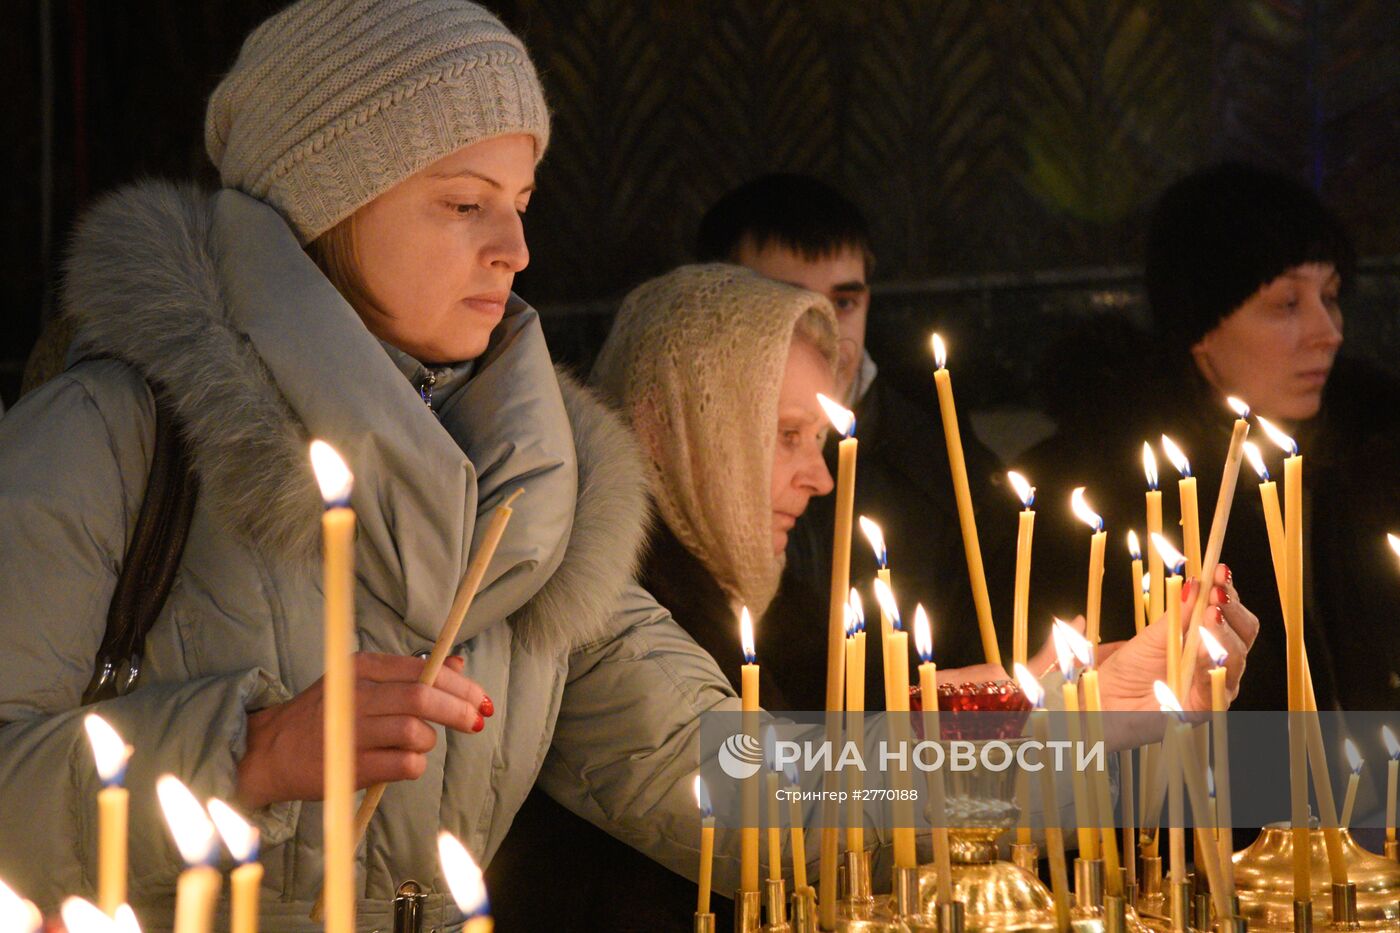 Празднование Рождества Христова в Киево-Печерской лавре